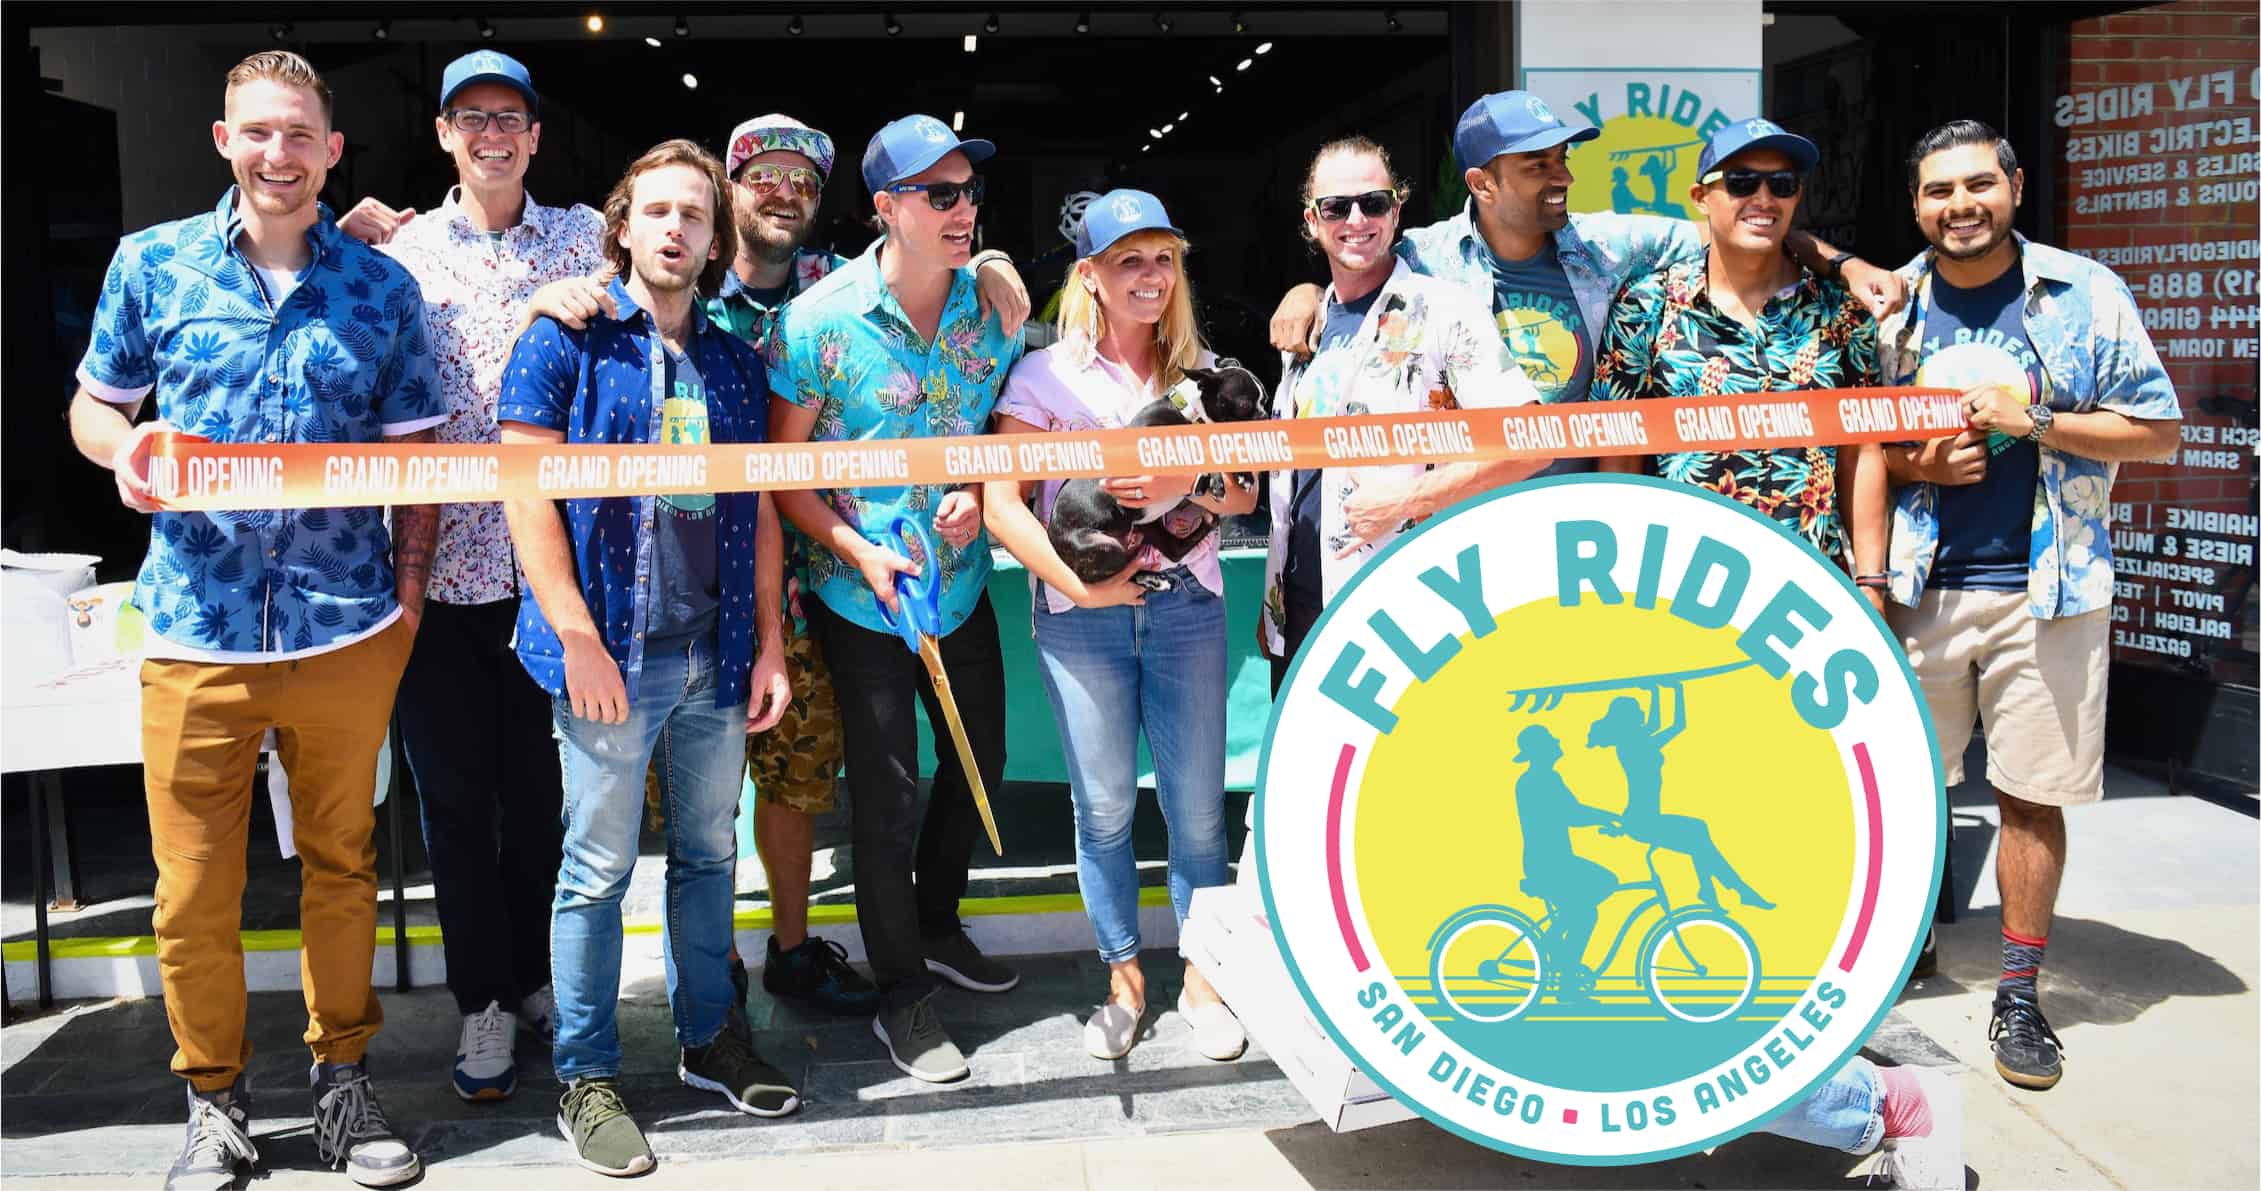 San Diego Fly Rides electric bike team